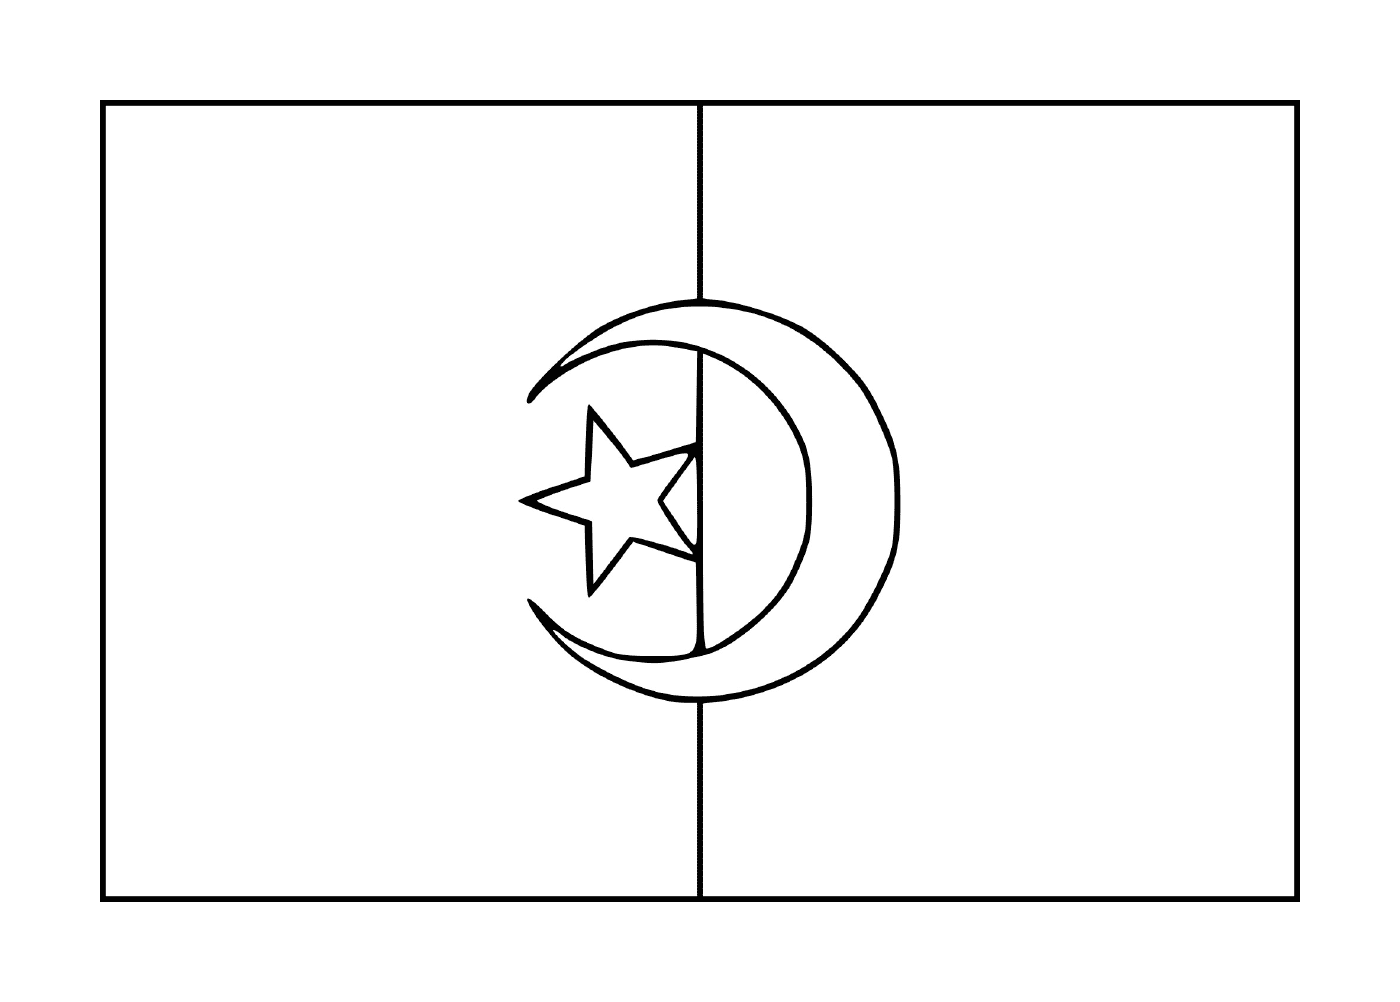  A flag of Algeria 